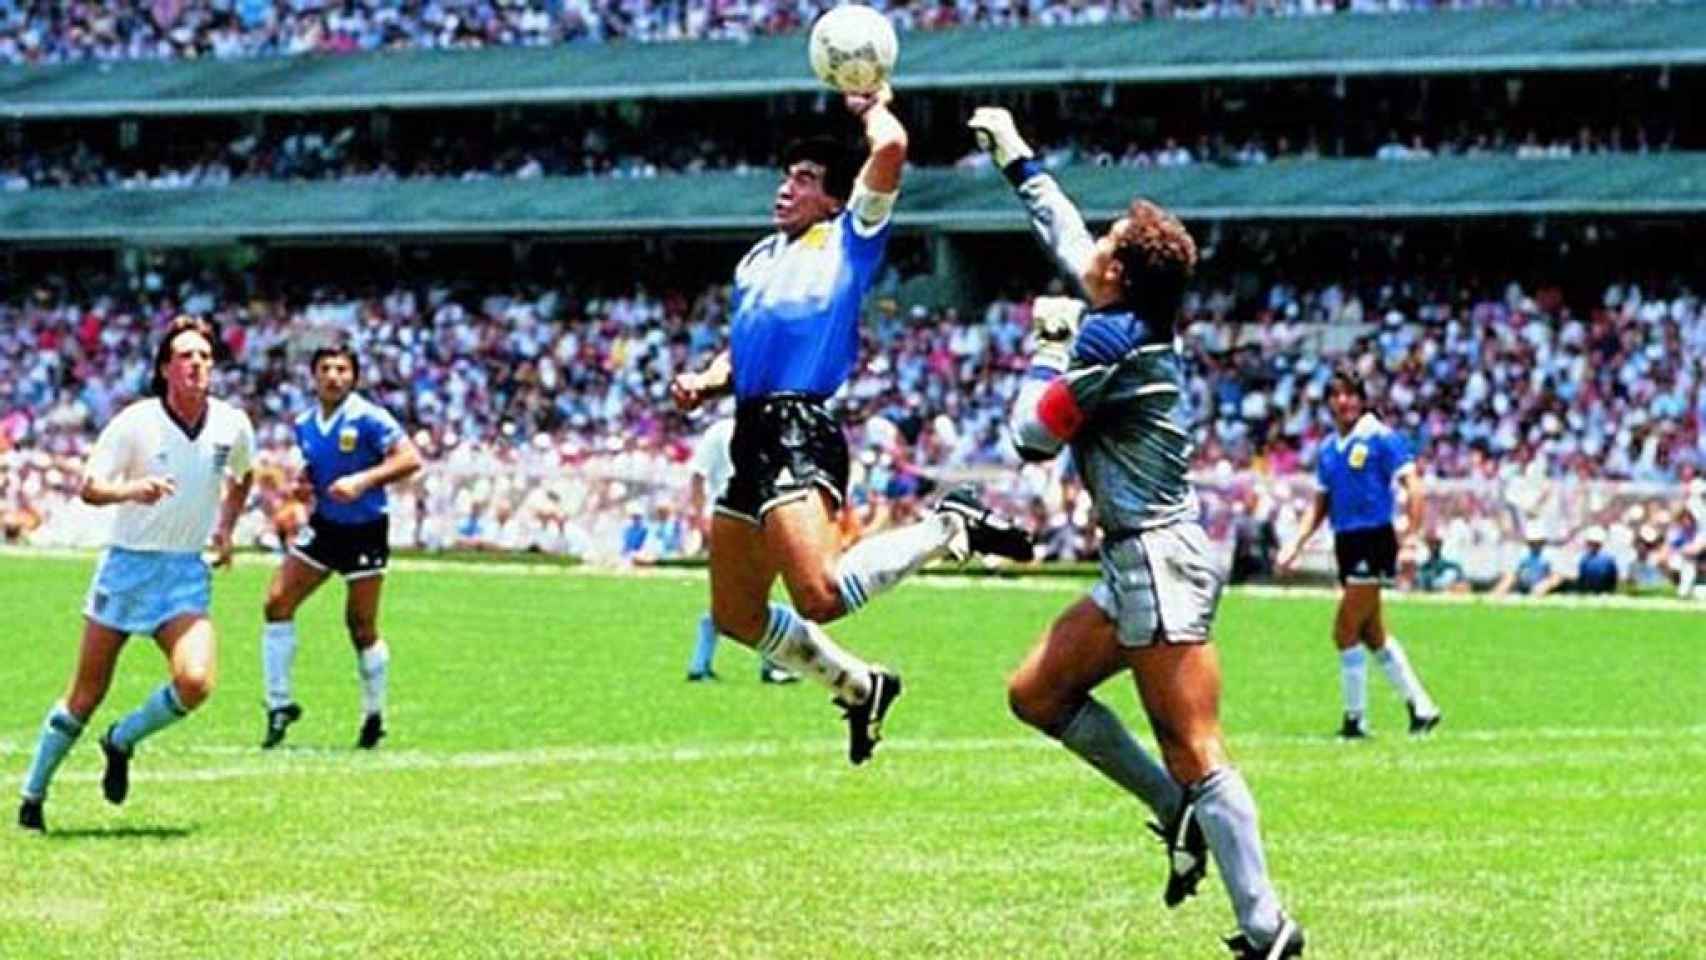 'La mano de Dios' de Maradona en un Argentina - Inglaterra